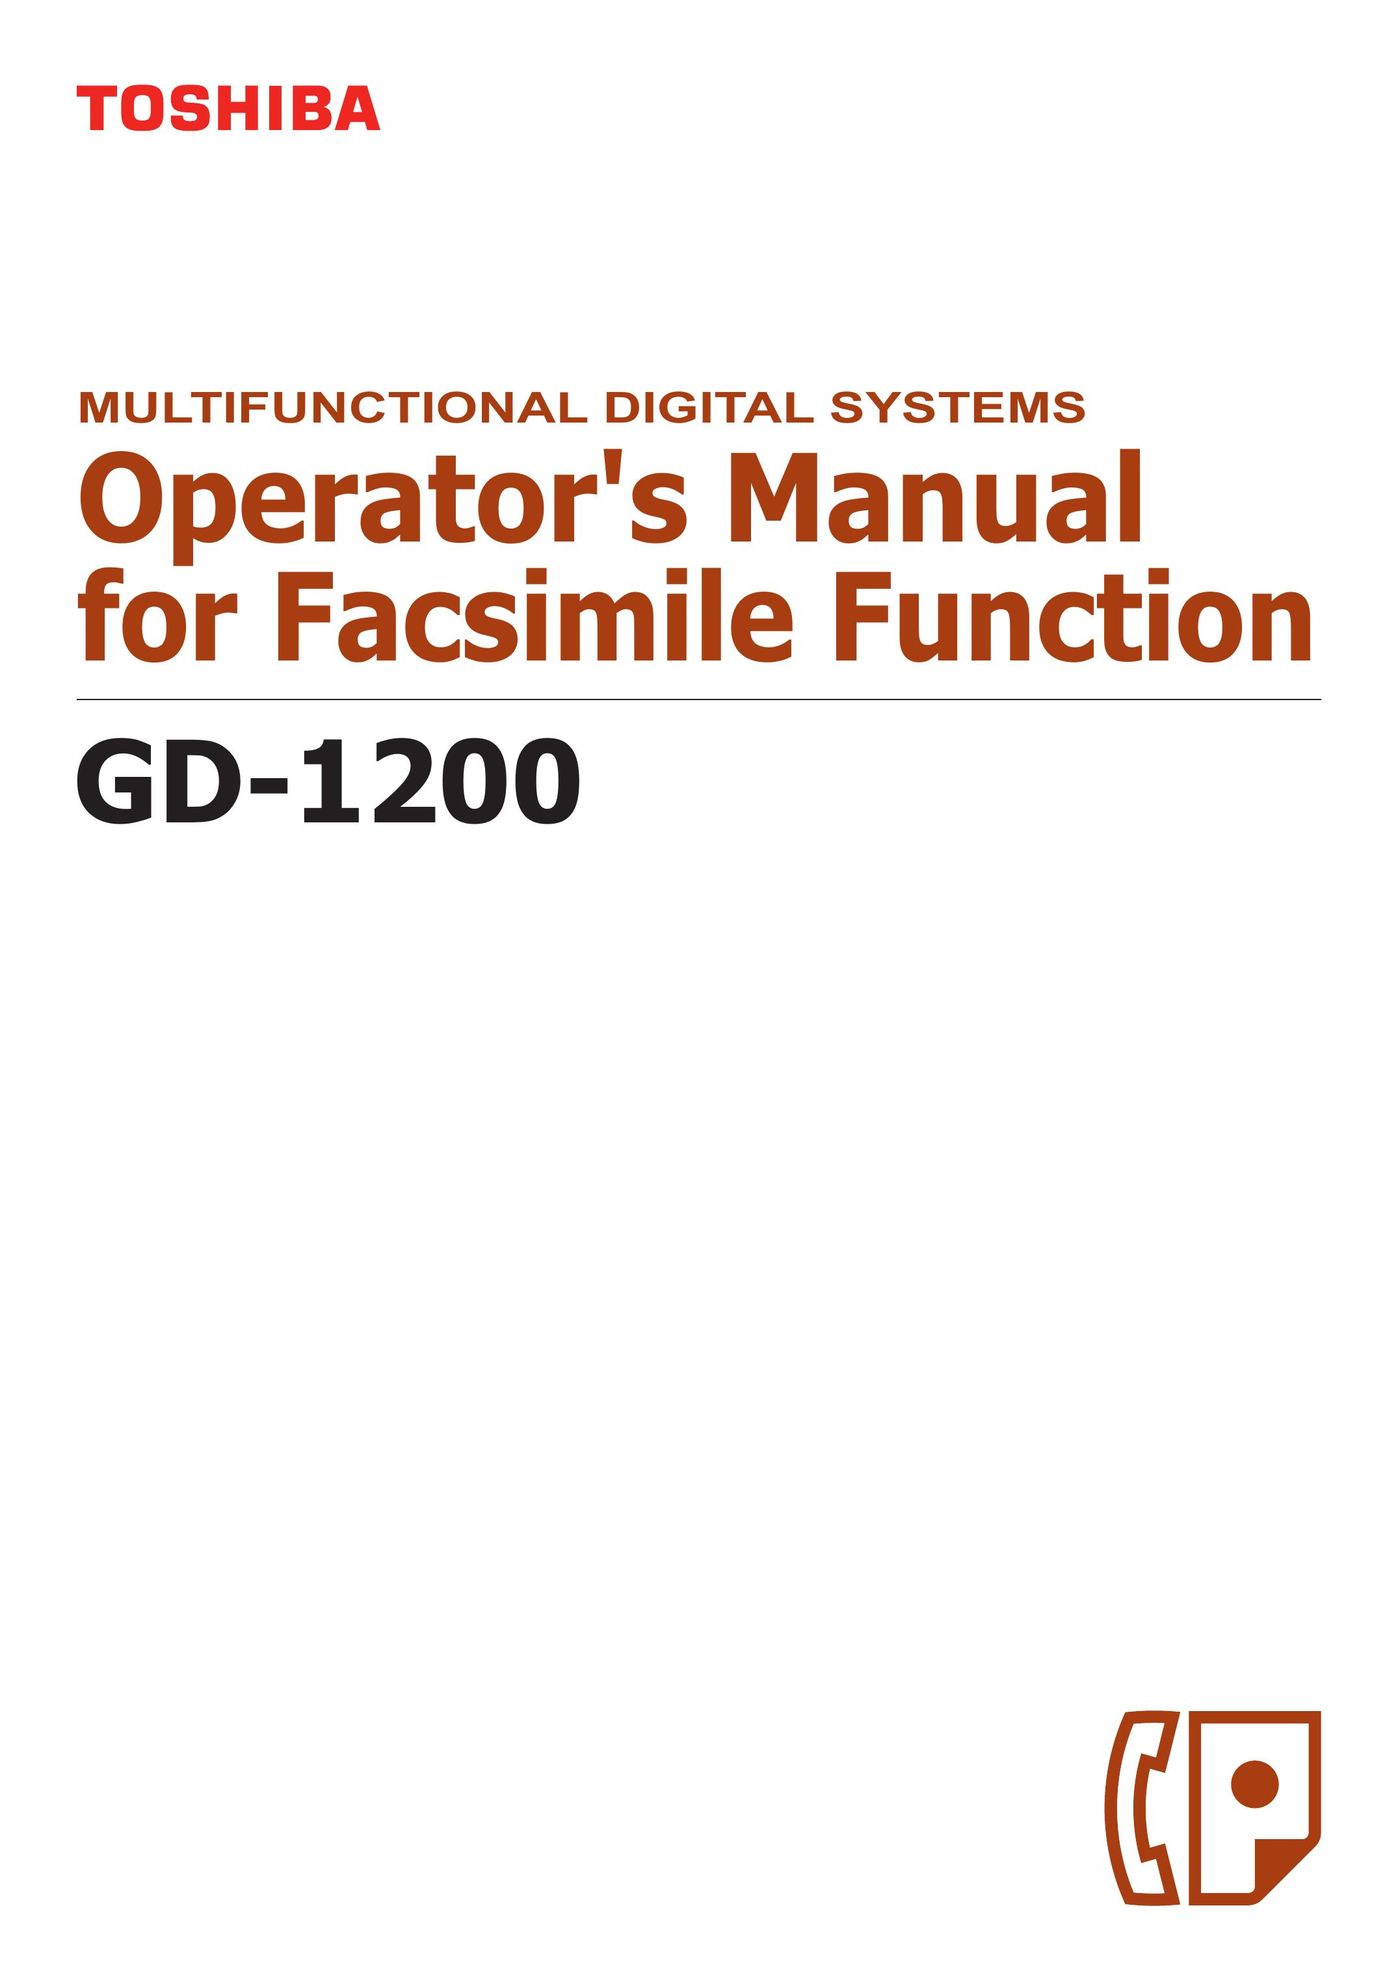 Hitachi GD-1200 Fax Machine User Manual